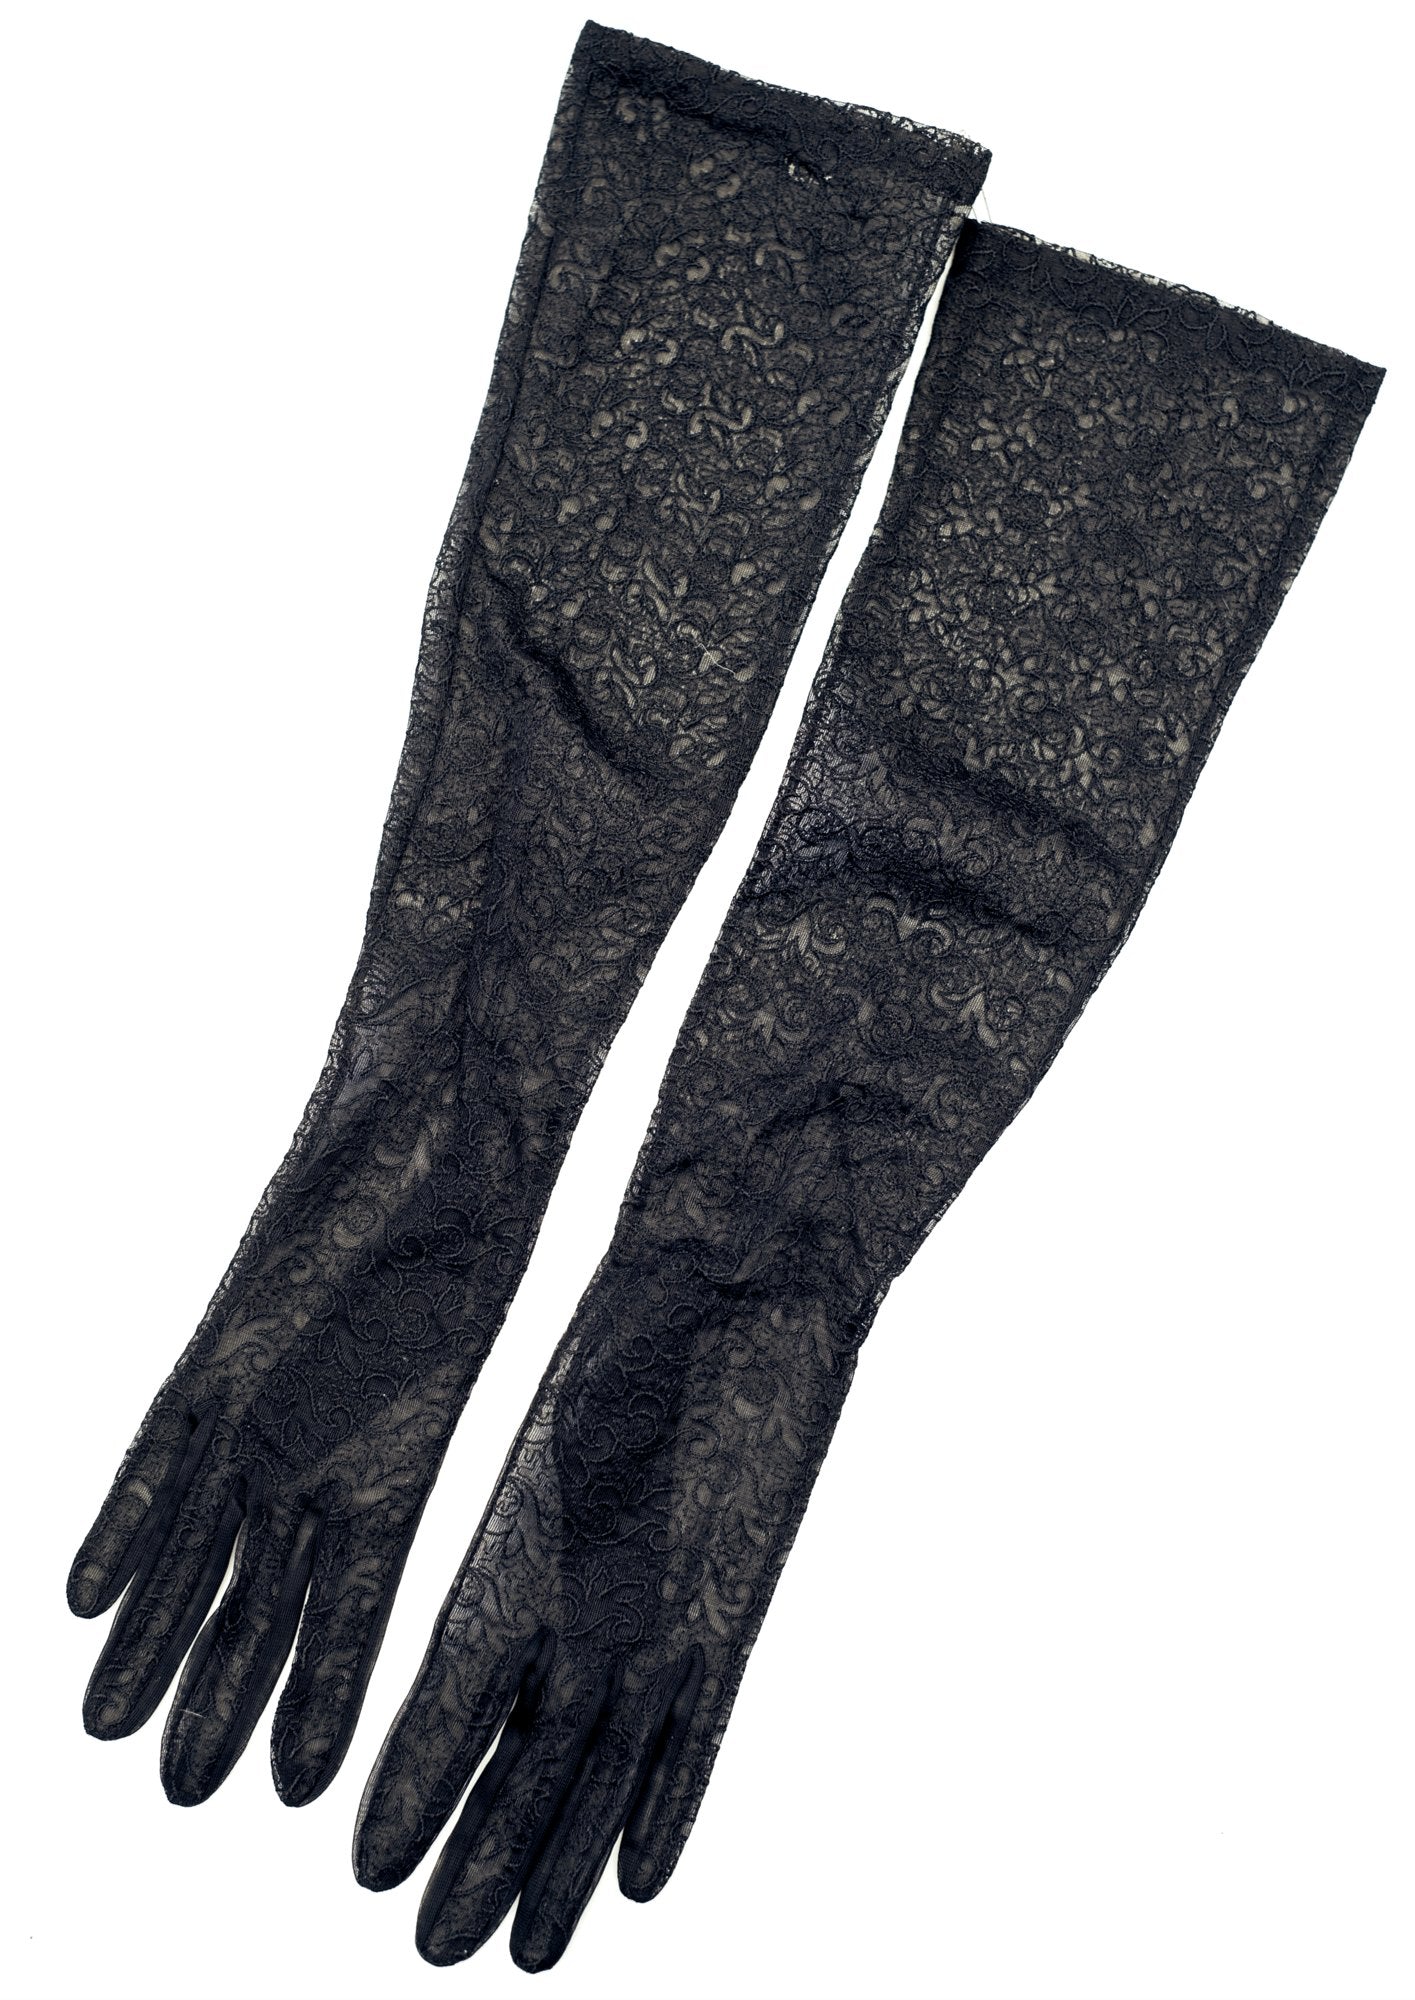 1950s Sheer Black Patterned Evening Gloves • Burlesque